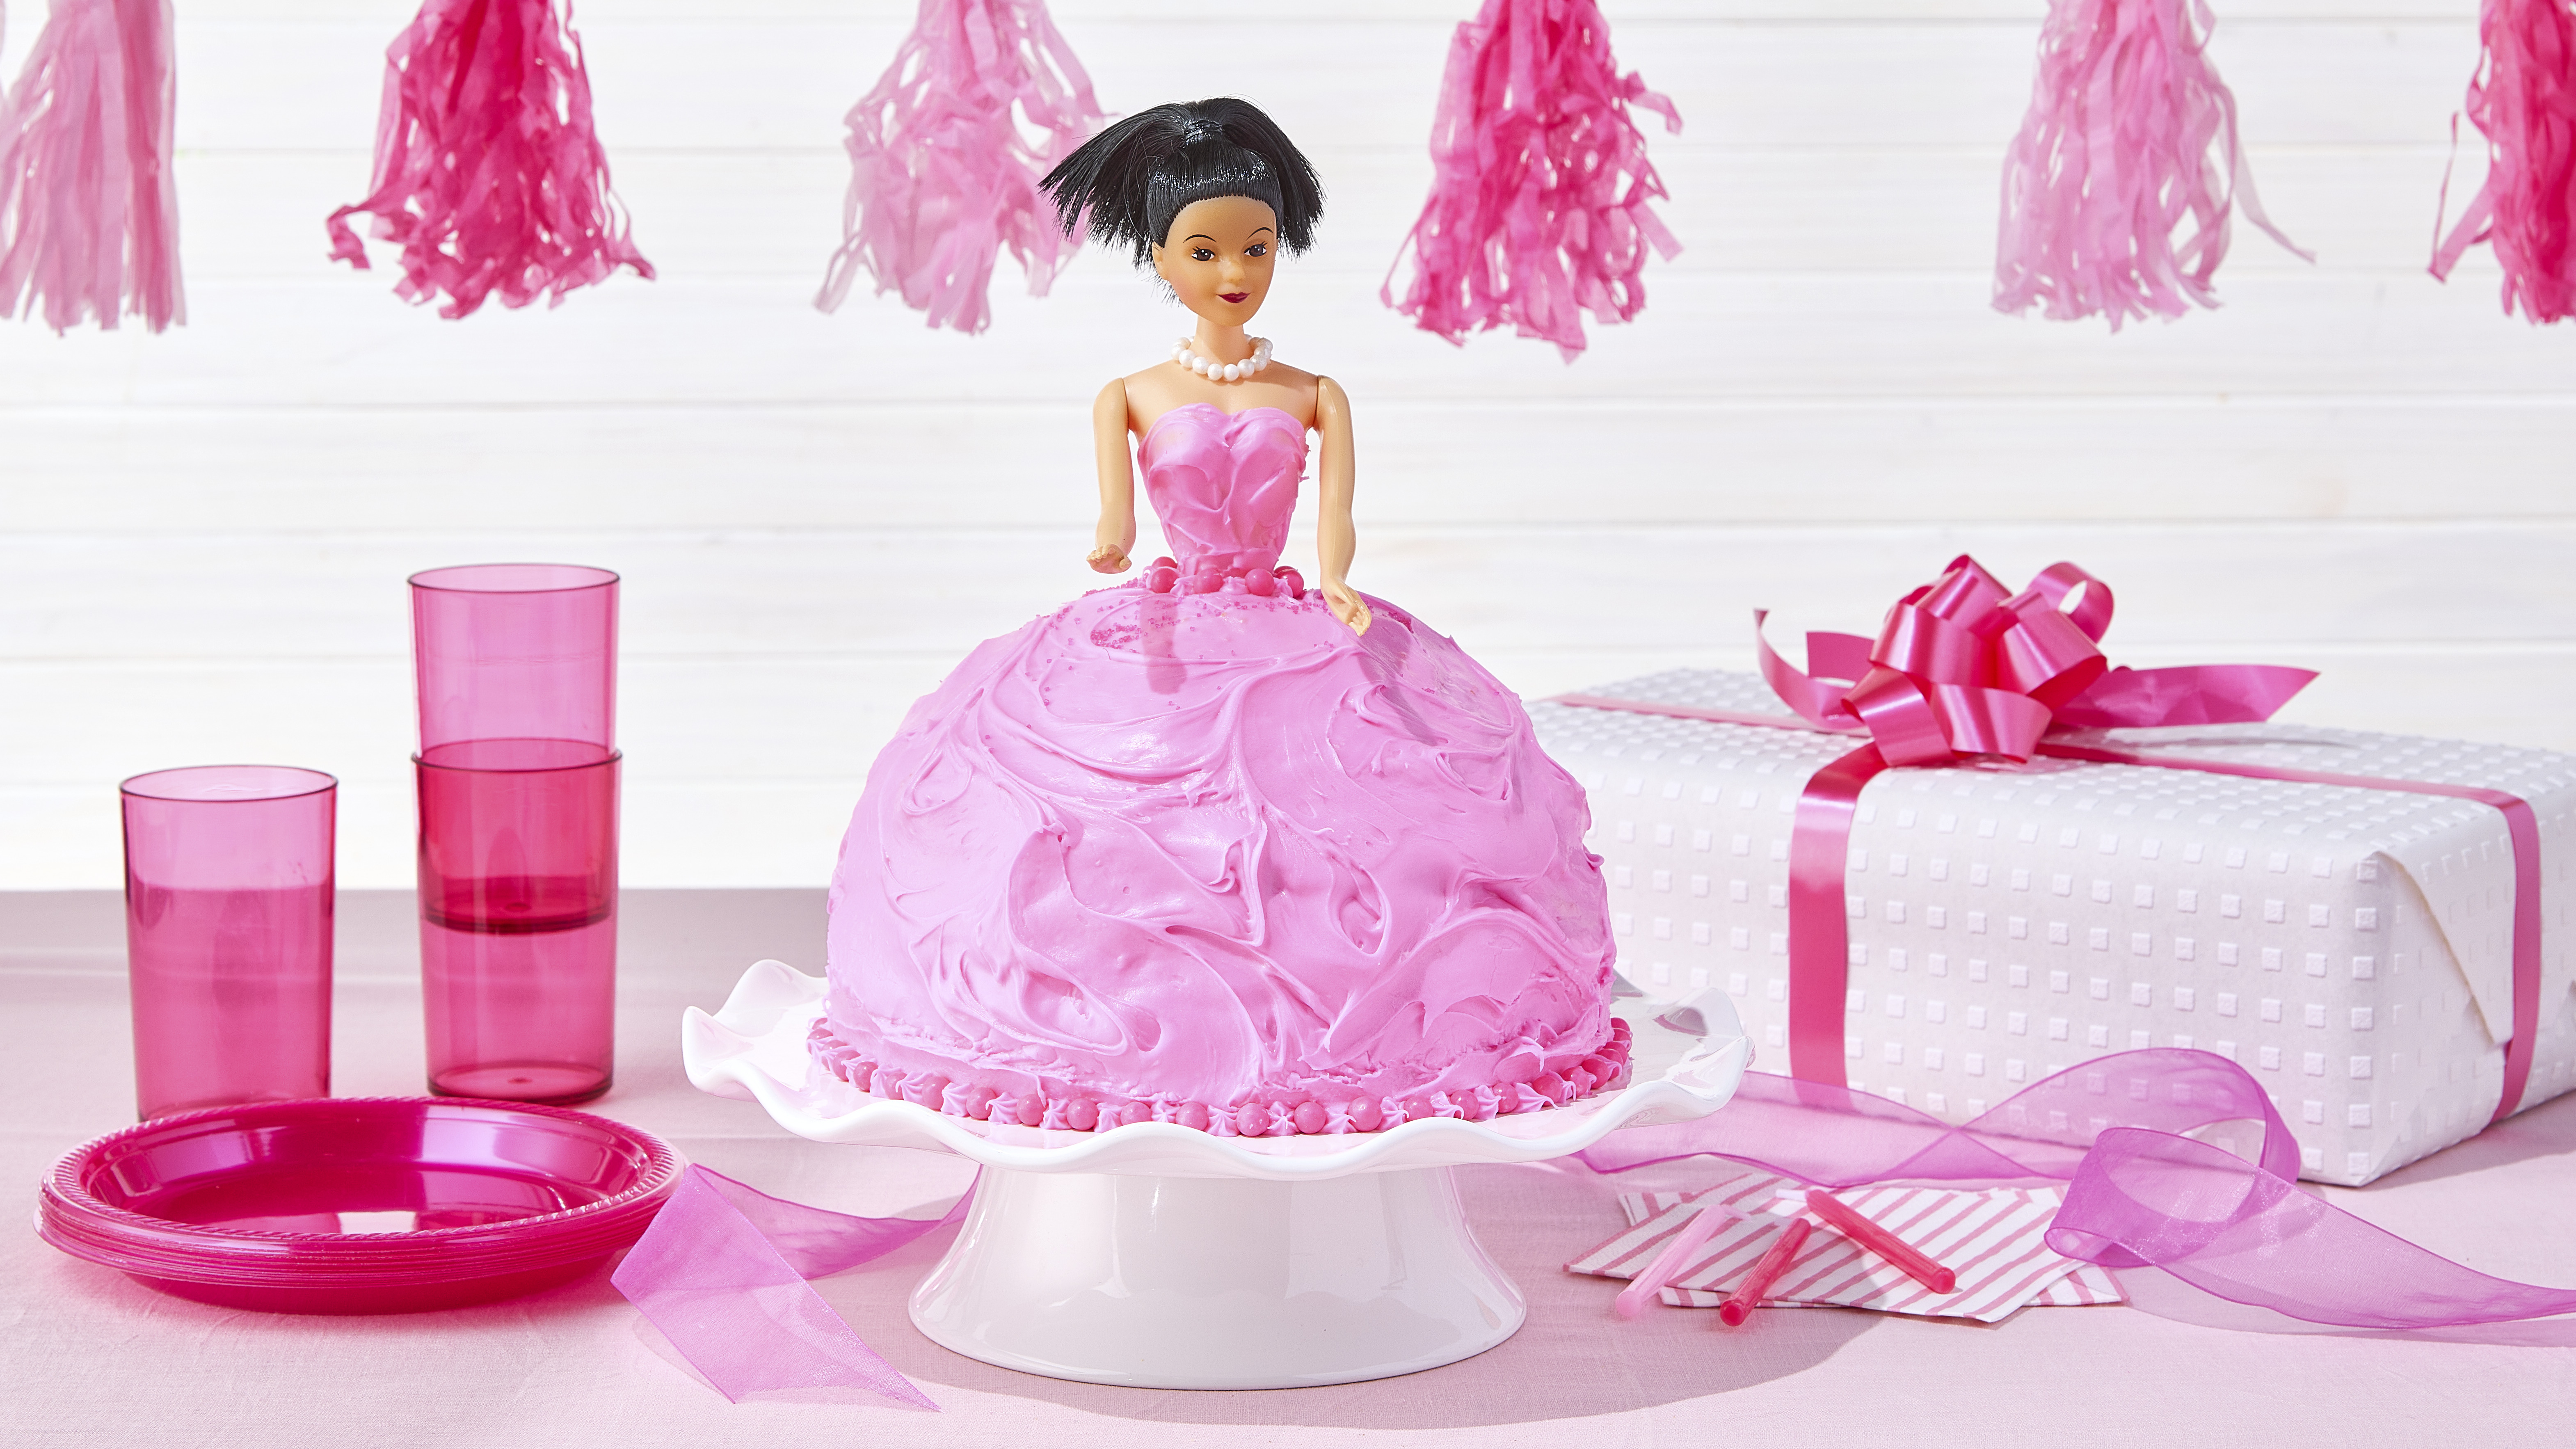 barbie cake for a @barbie themed birthday party❤️ @barbiethemovie  #comeonbarbieletsgobake #cakesofinstagram #cakestagram #cakes #c... |  Instagram